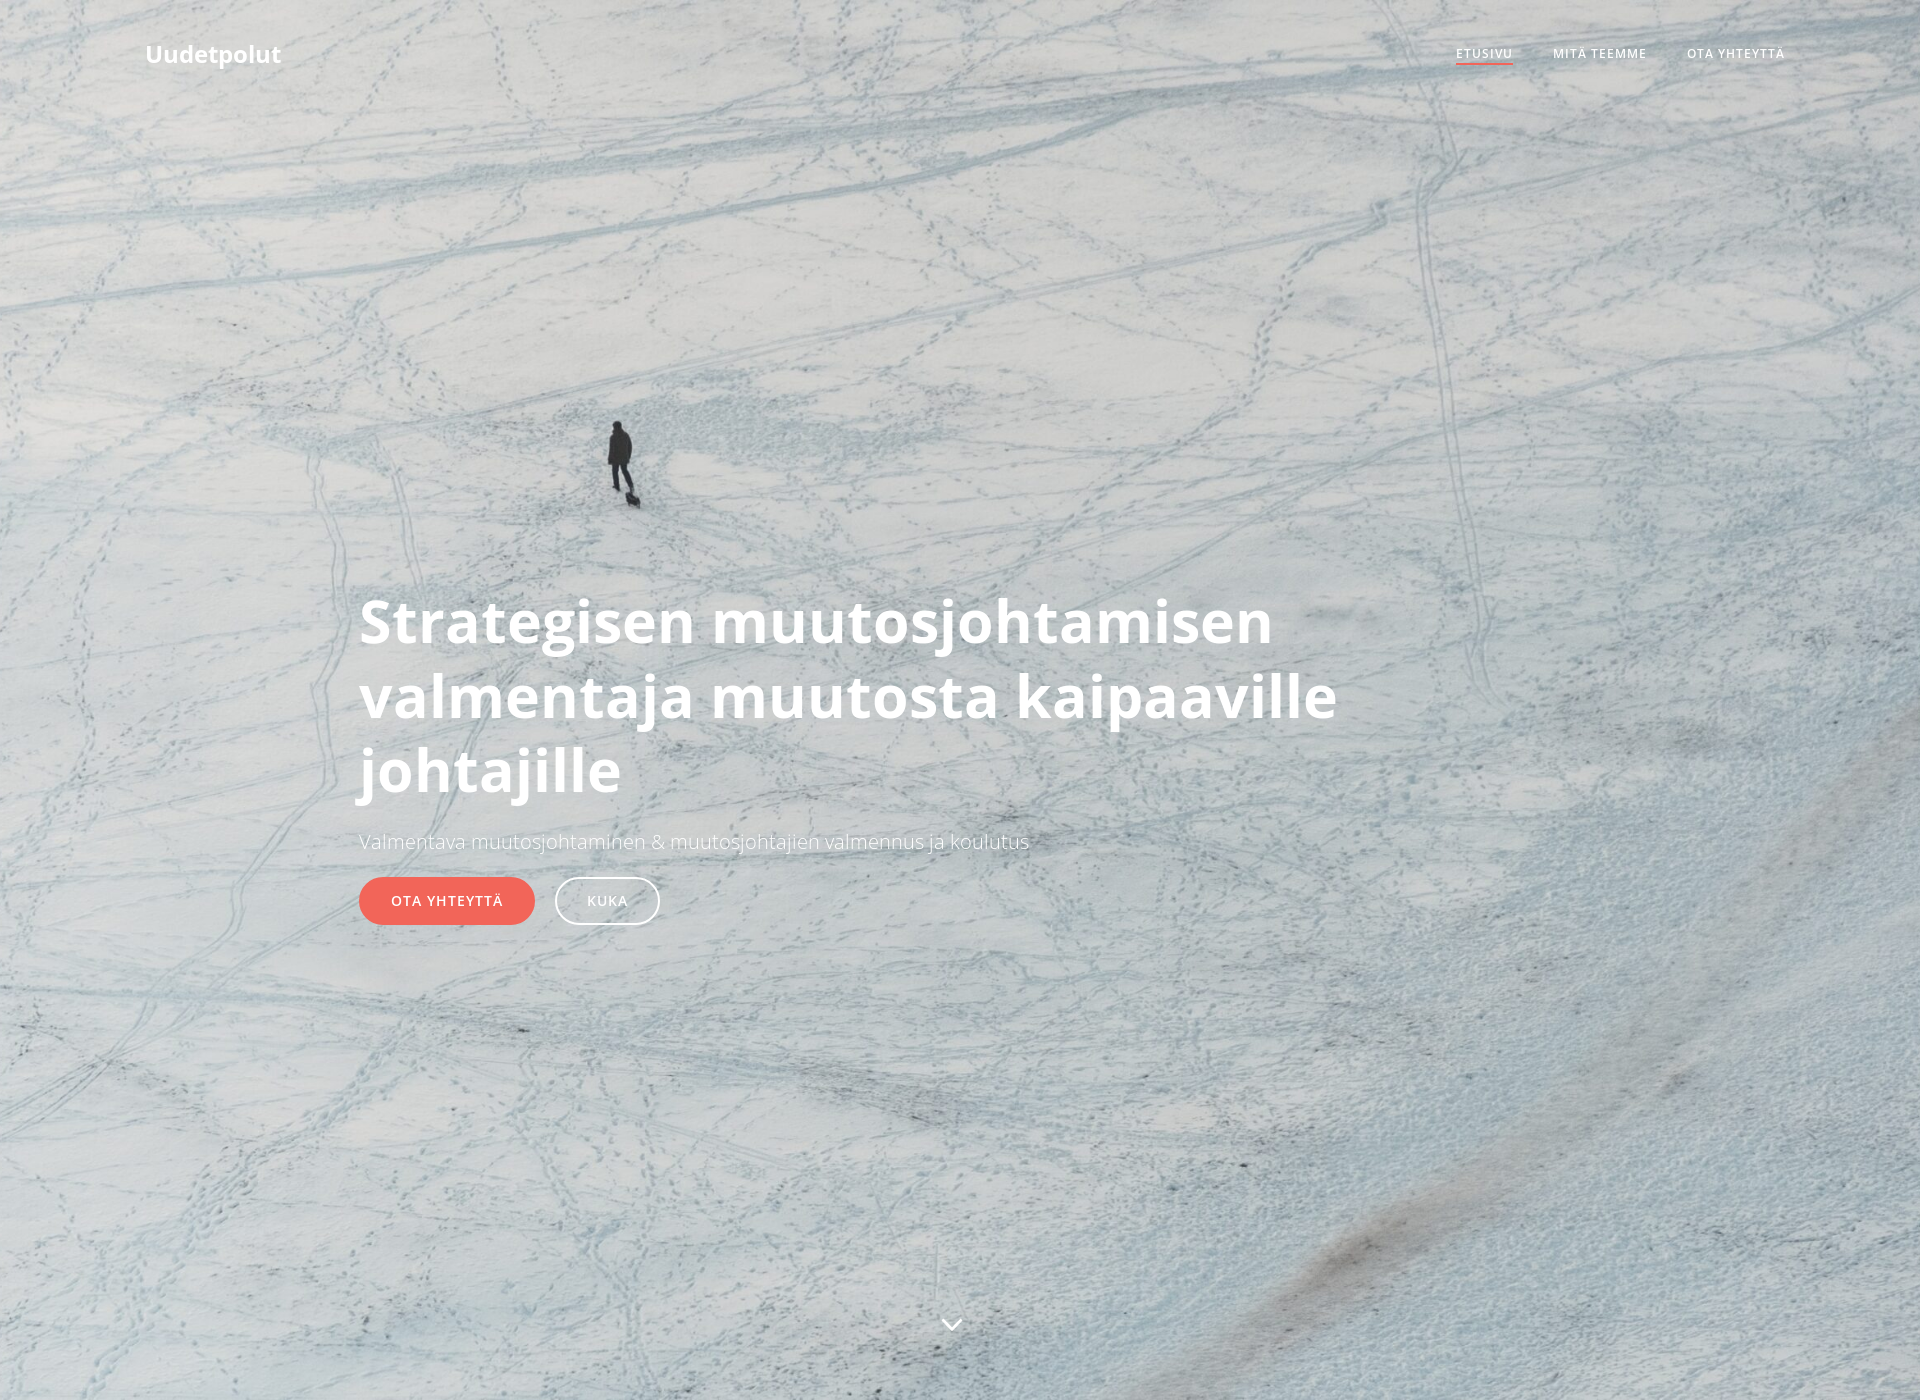 Skärmdump för uudetpolut.fi